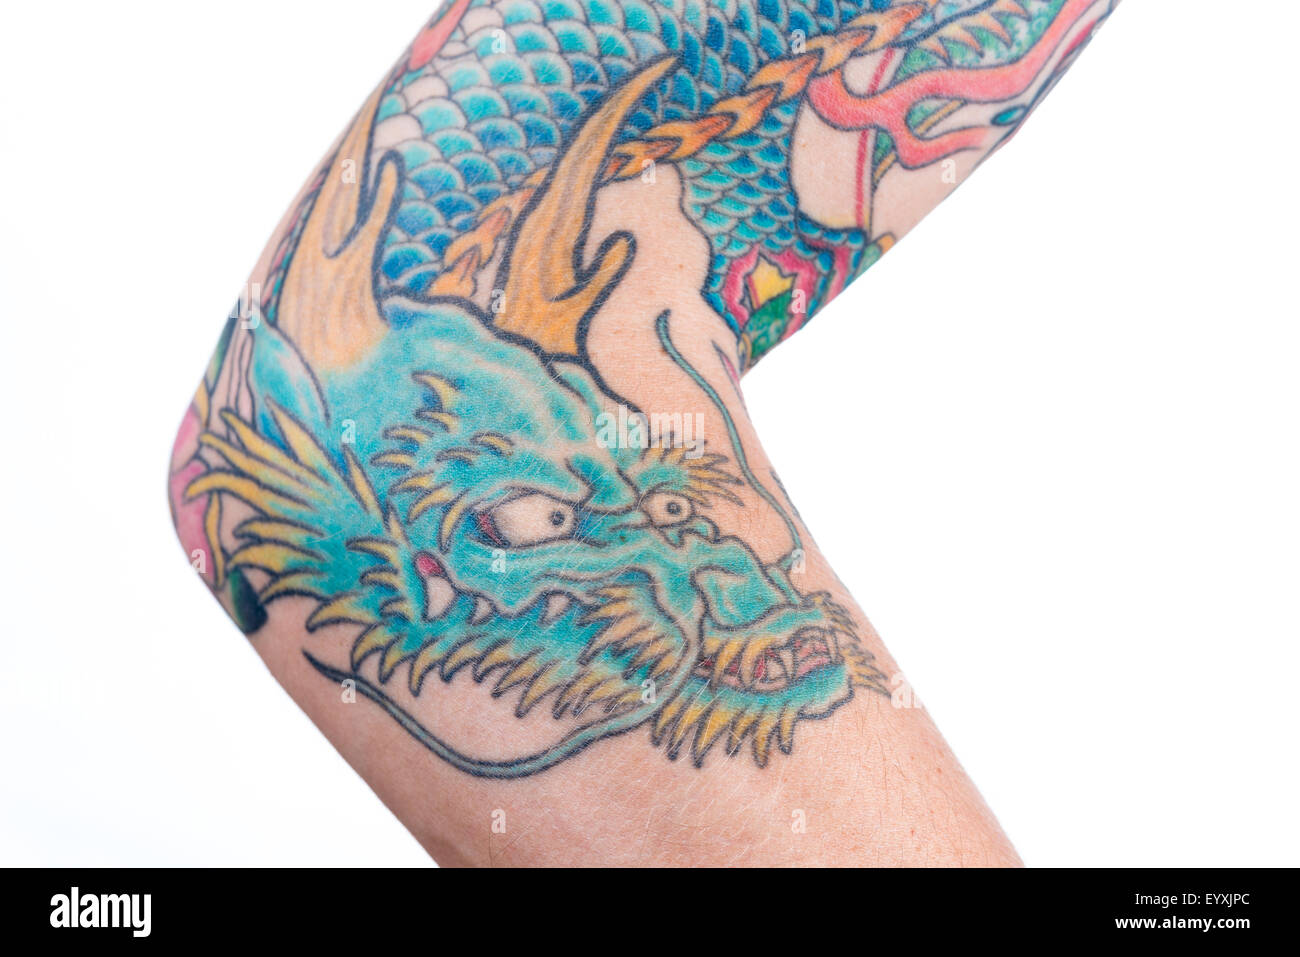 Una dettagliata inquadratura di un blu/green dragon tattoo in stile giapponese sull'avambraccio, gomito e bicipite di un maschio bianco isolato su un wh Foto Stock